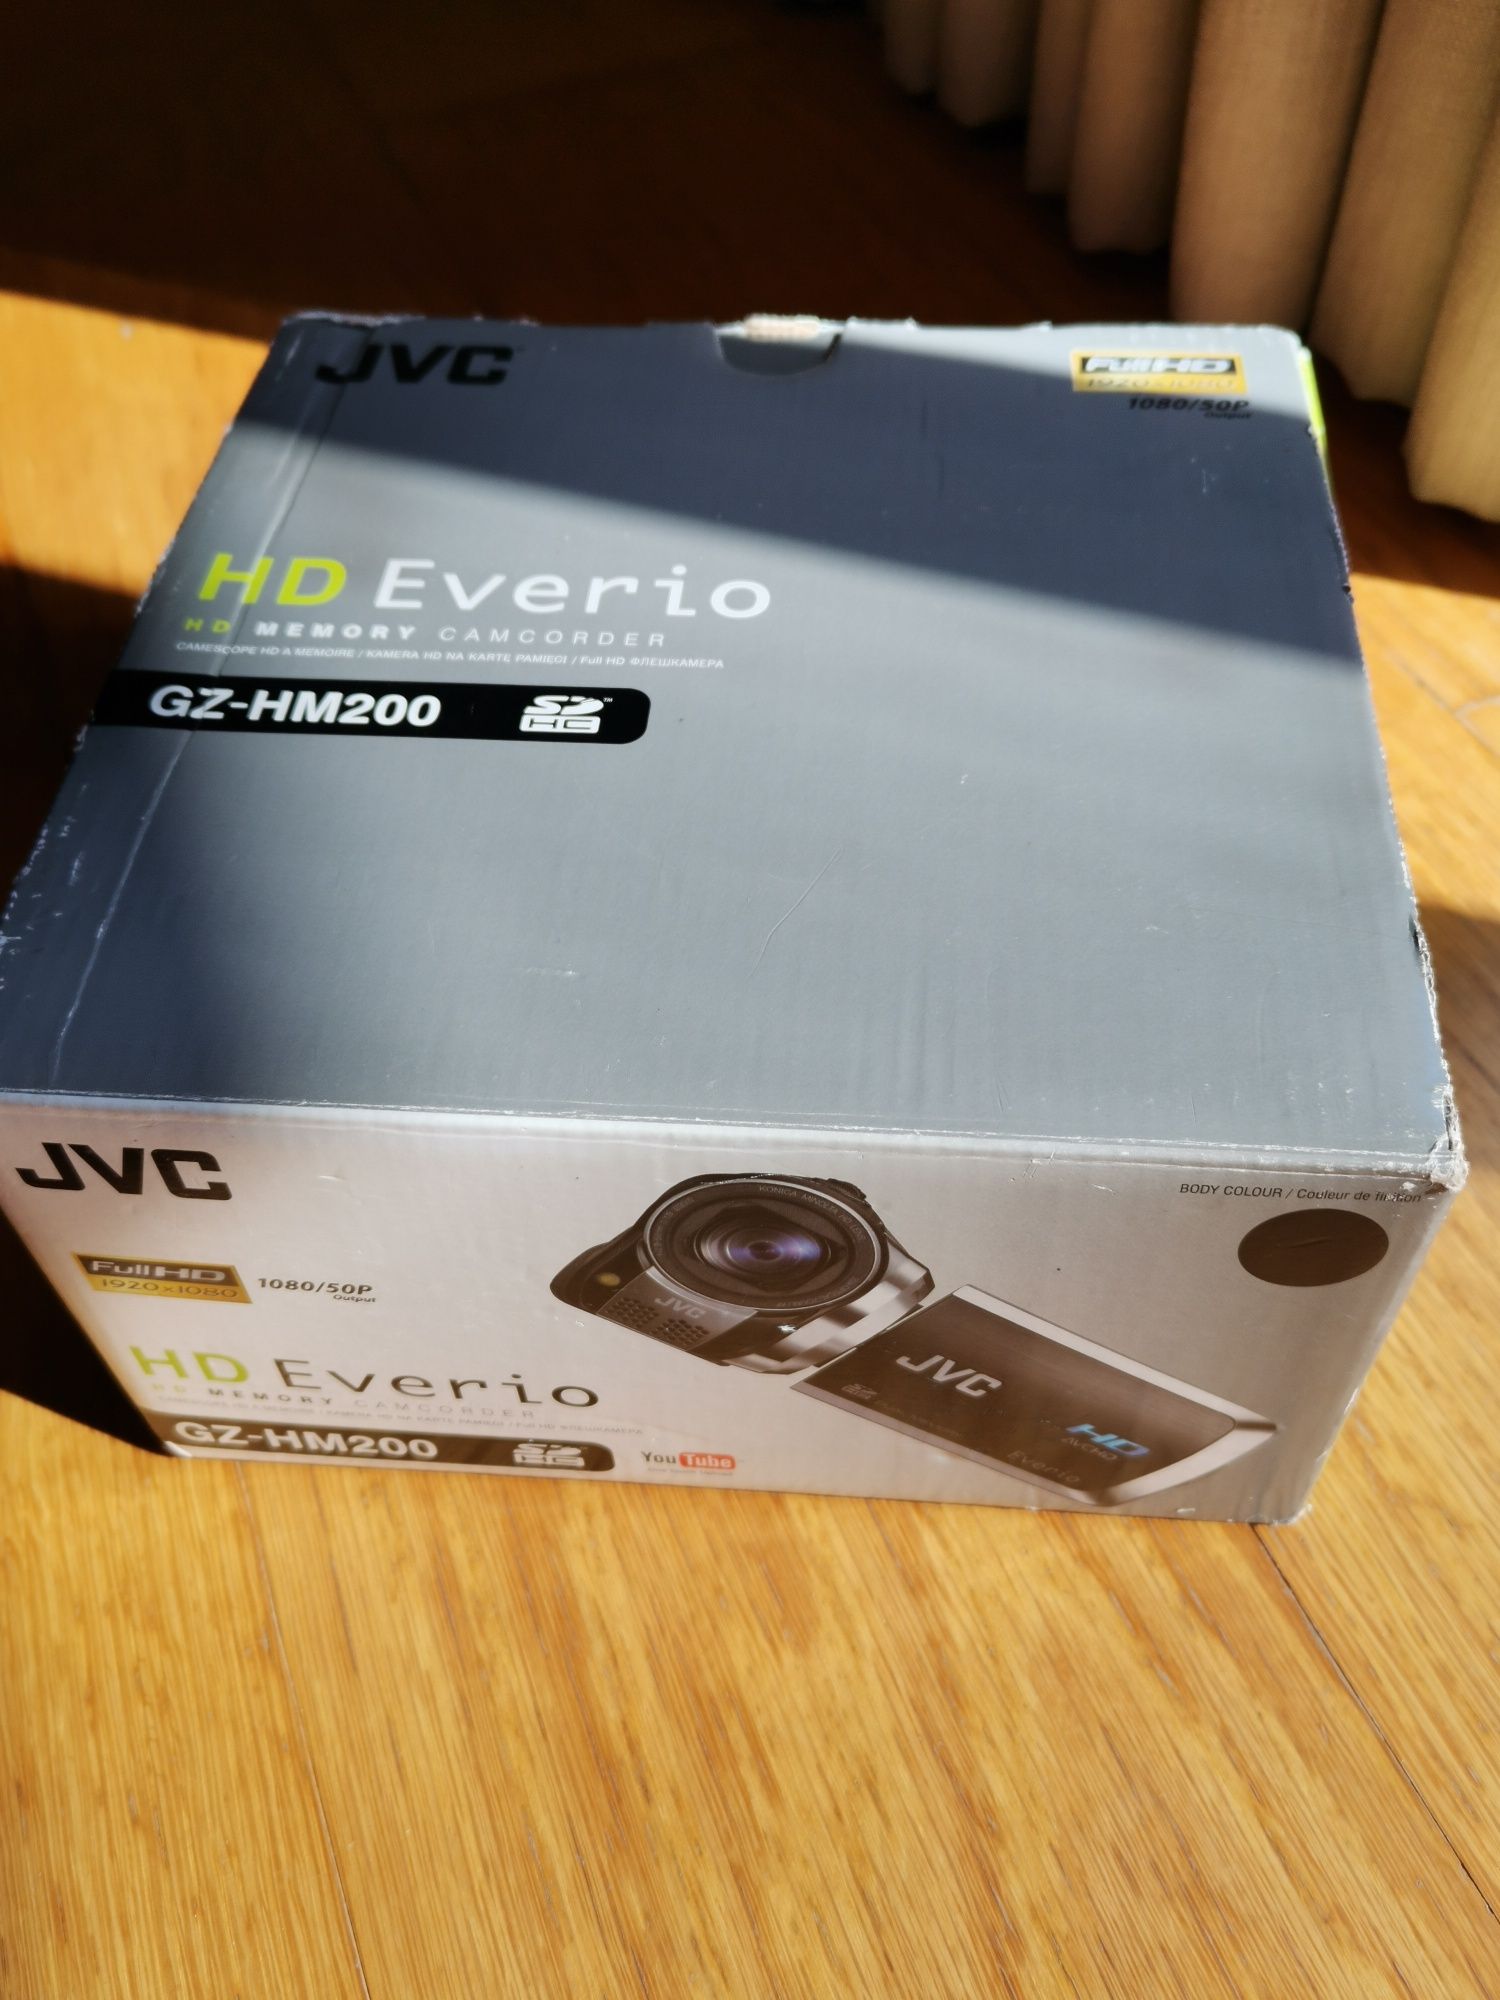 Câmara de filmar JVC HD Everio GZ - Hm 200 20x